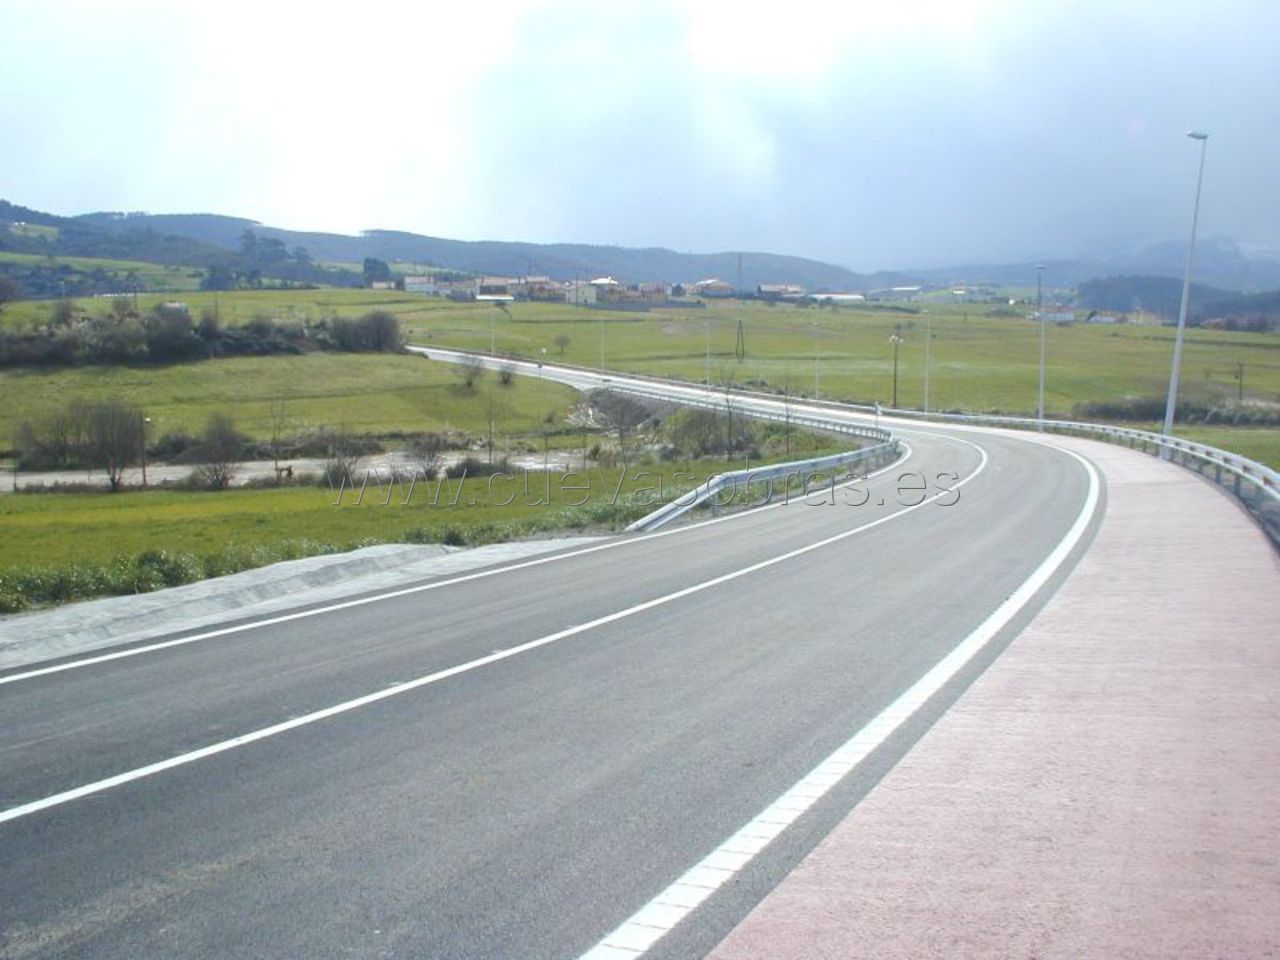 Ejecución del tramo de carretera Polanco – Posadillo en la CA-330. Cantabria.